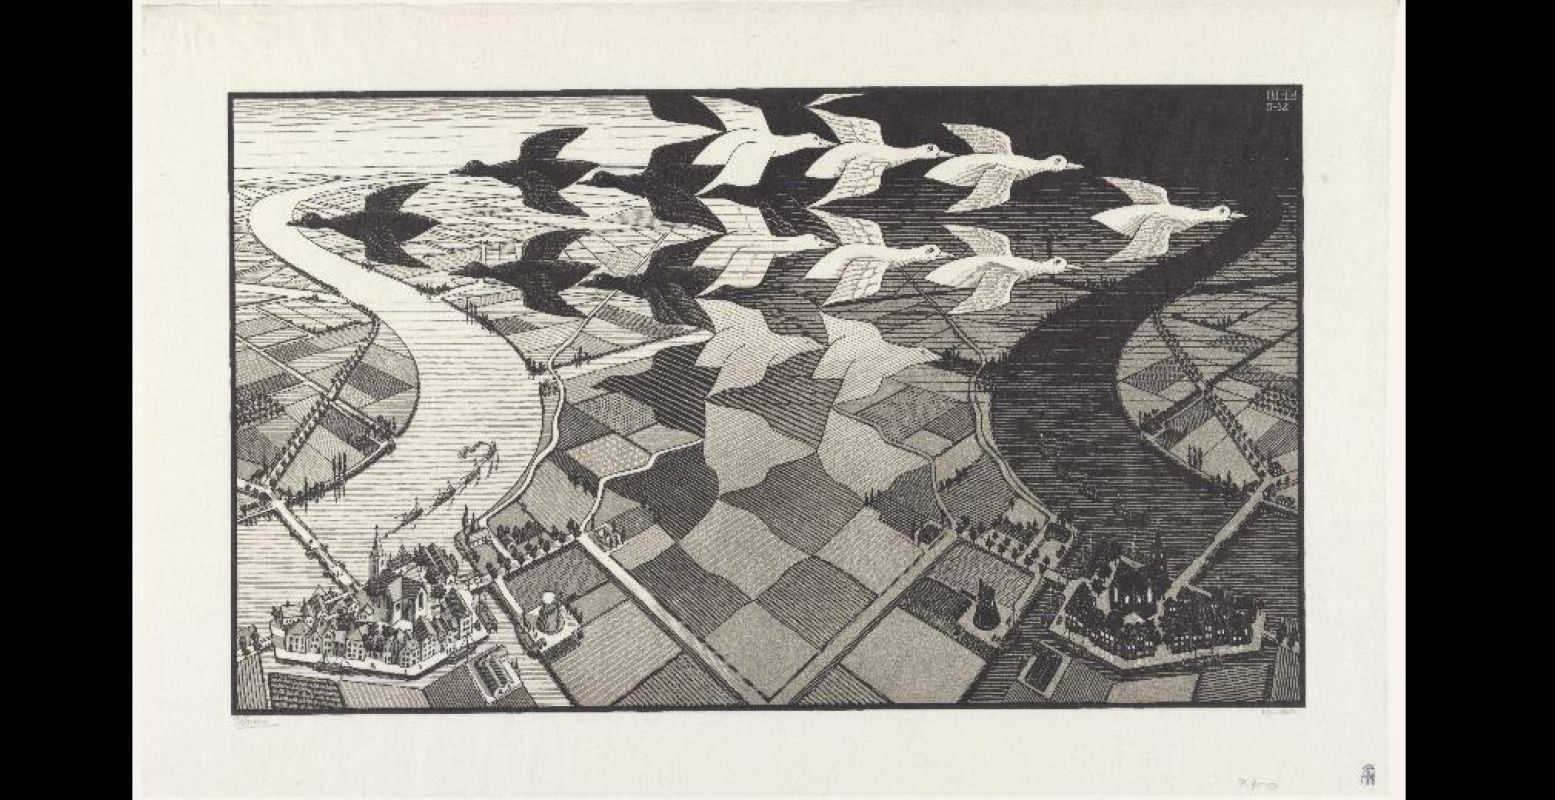 Foto: M.C. Escher's "Dag en Nacht" (1938) © the M.C. Escher Company B.V. All rights reserved. www.mcescher.com